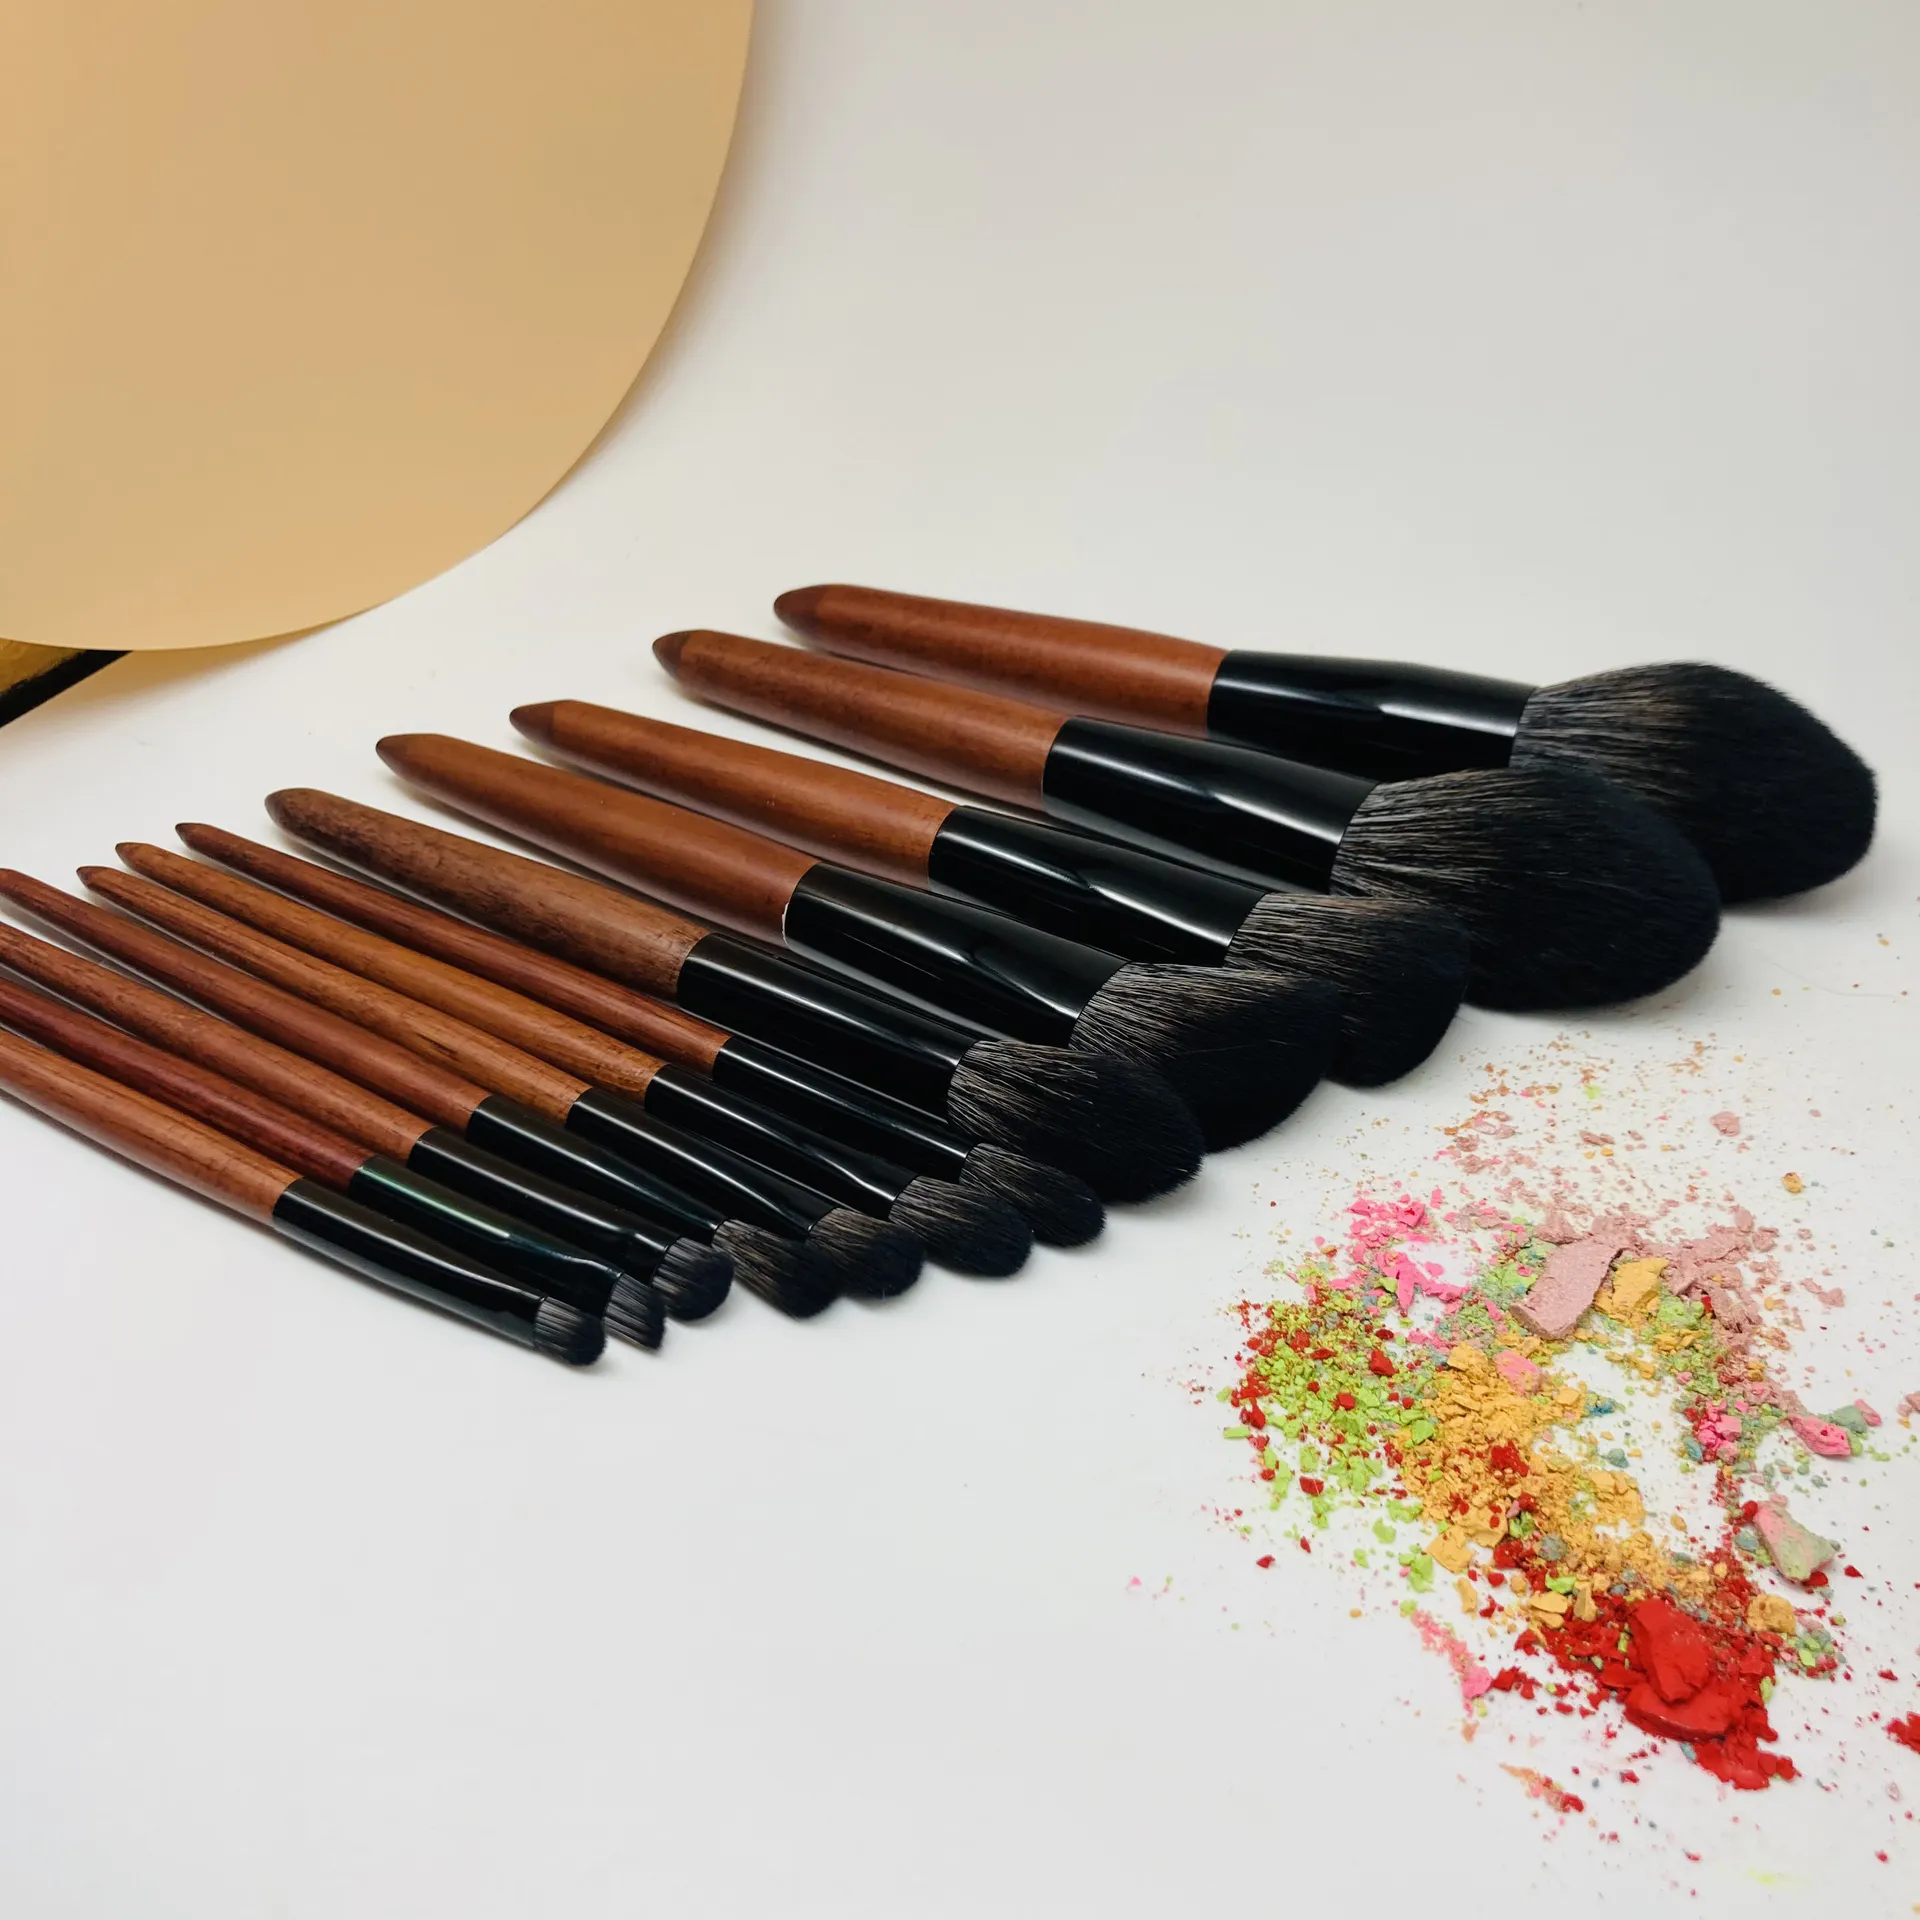 Portapennelli cosmetici make up kit di pennelli di alta qualità set di pennelli cosmetici professionali con logo personalizzato